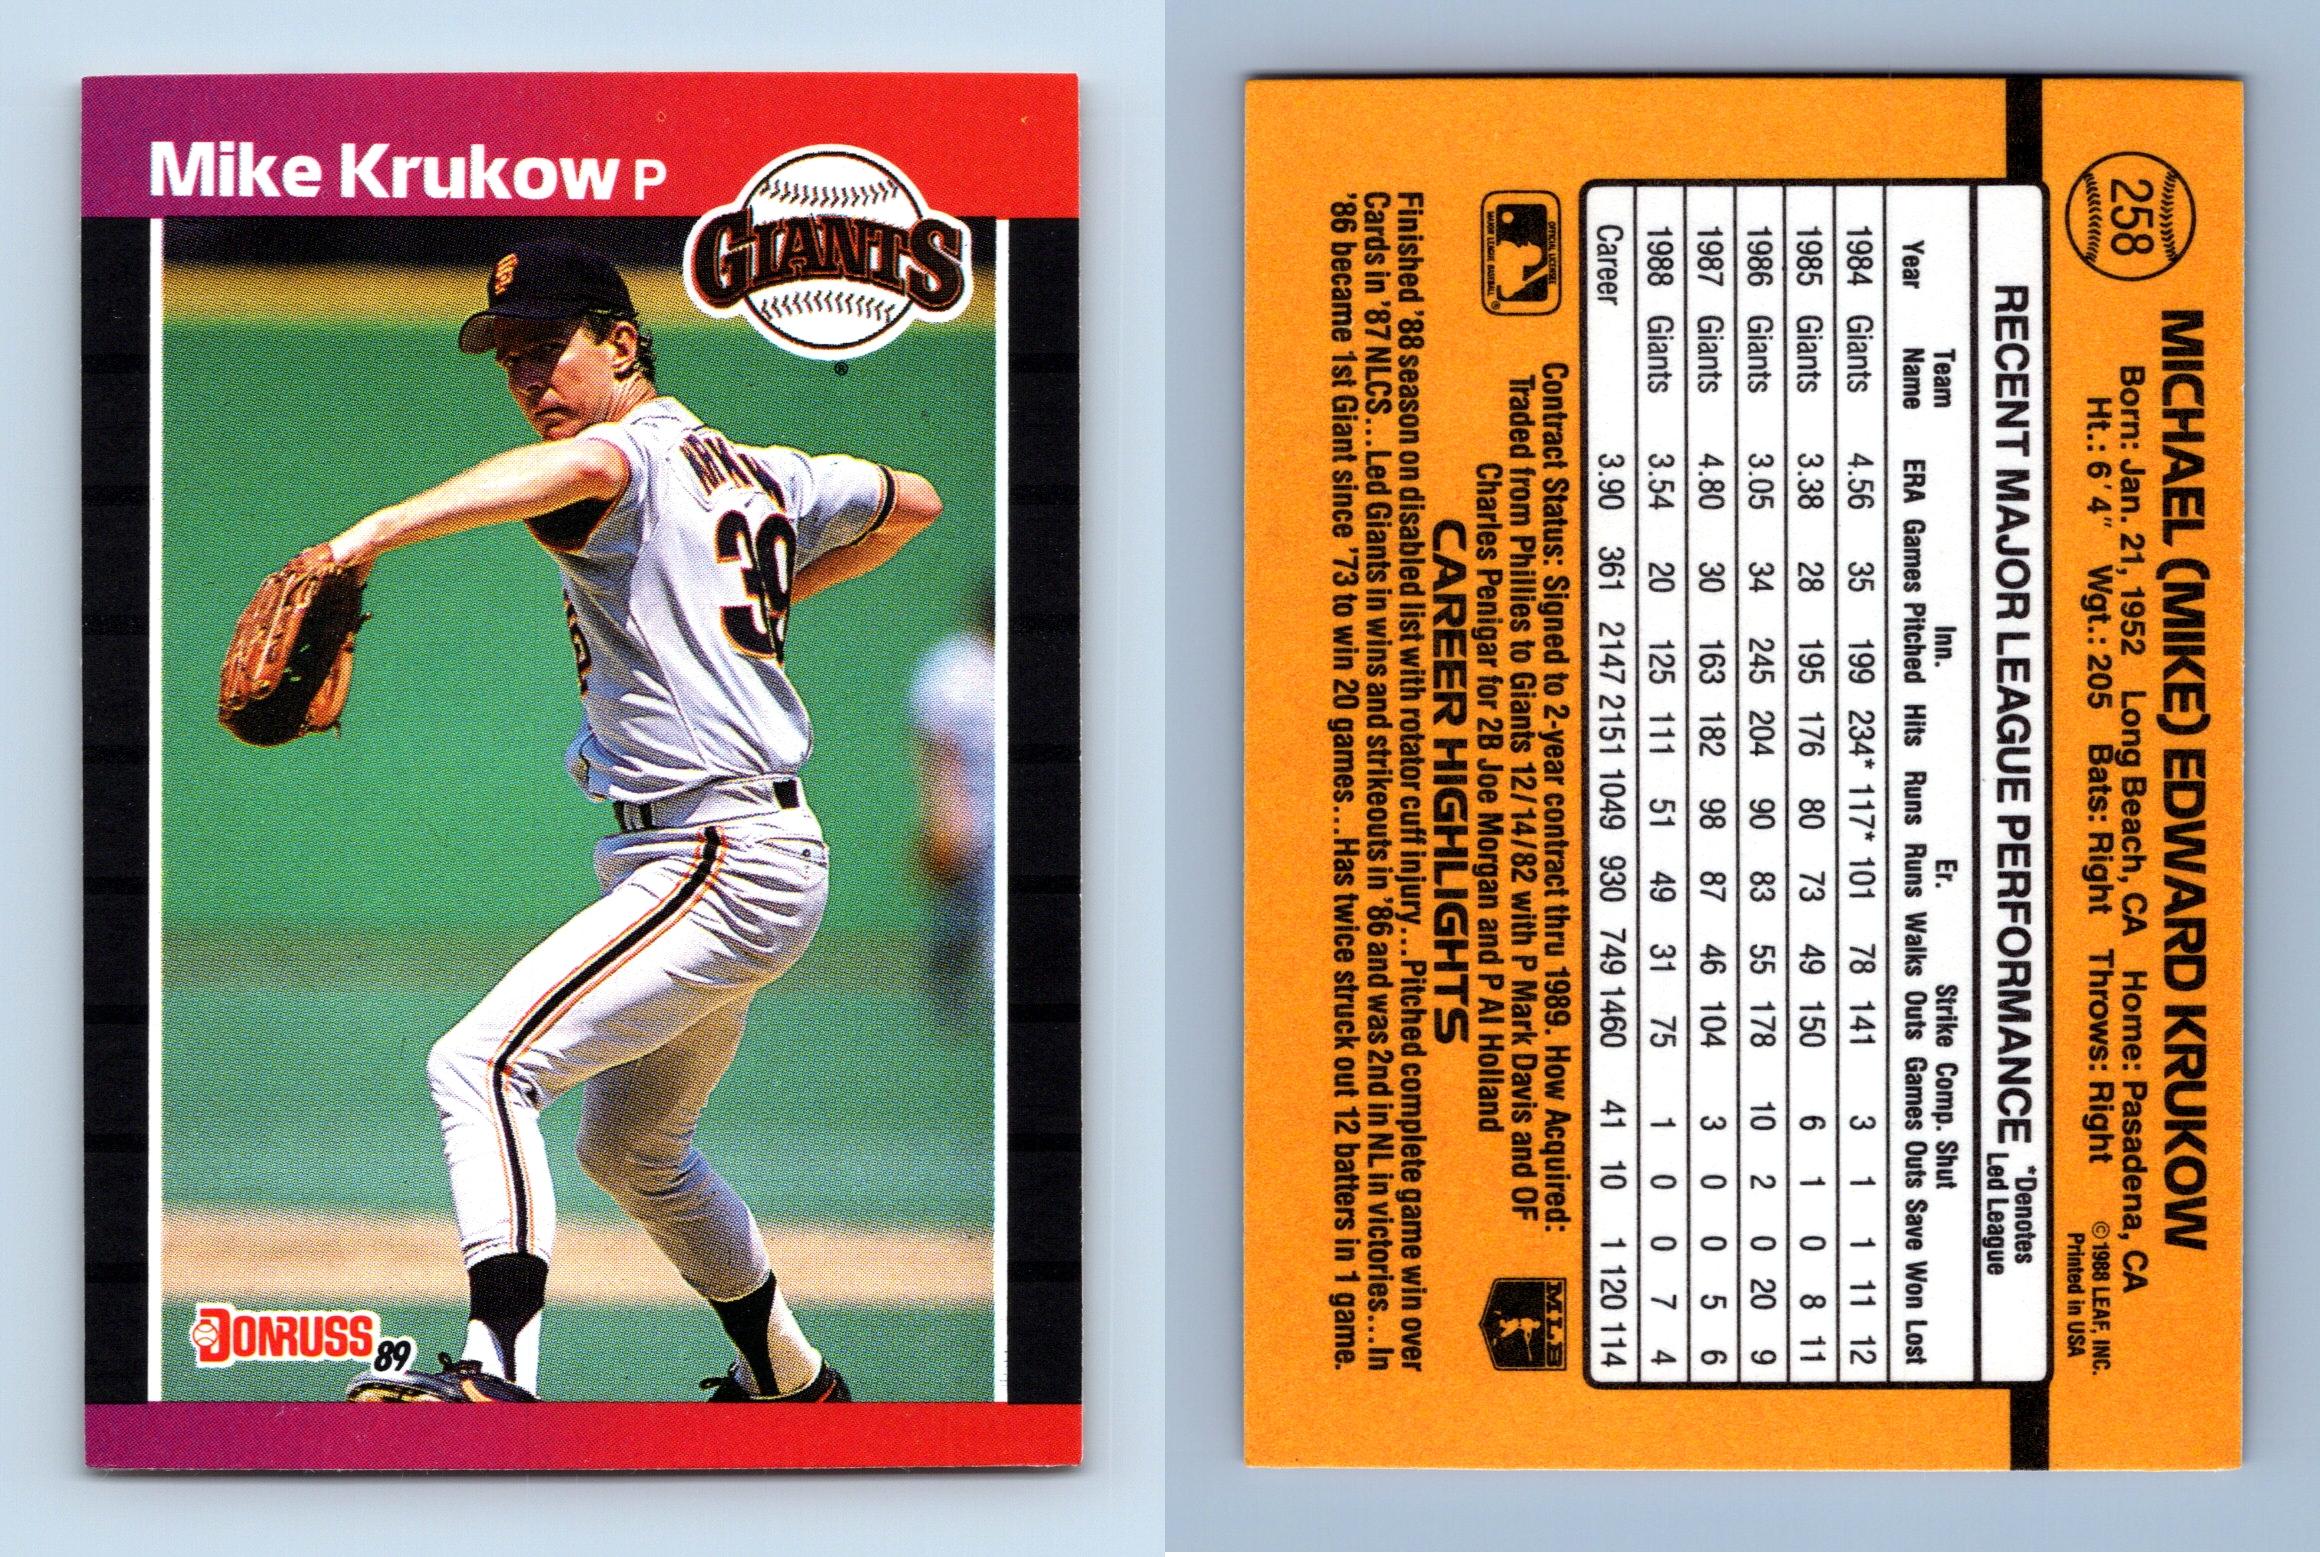 Mike Krukow - Giants #258 Donruss 1989 Baseball Trading Card